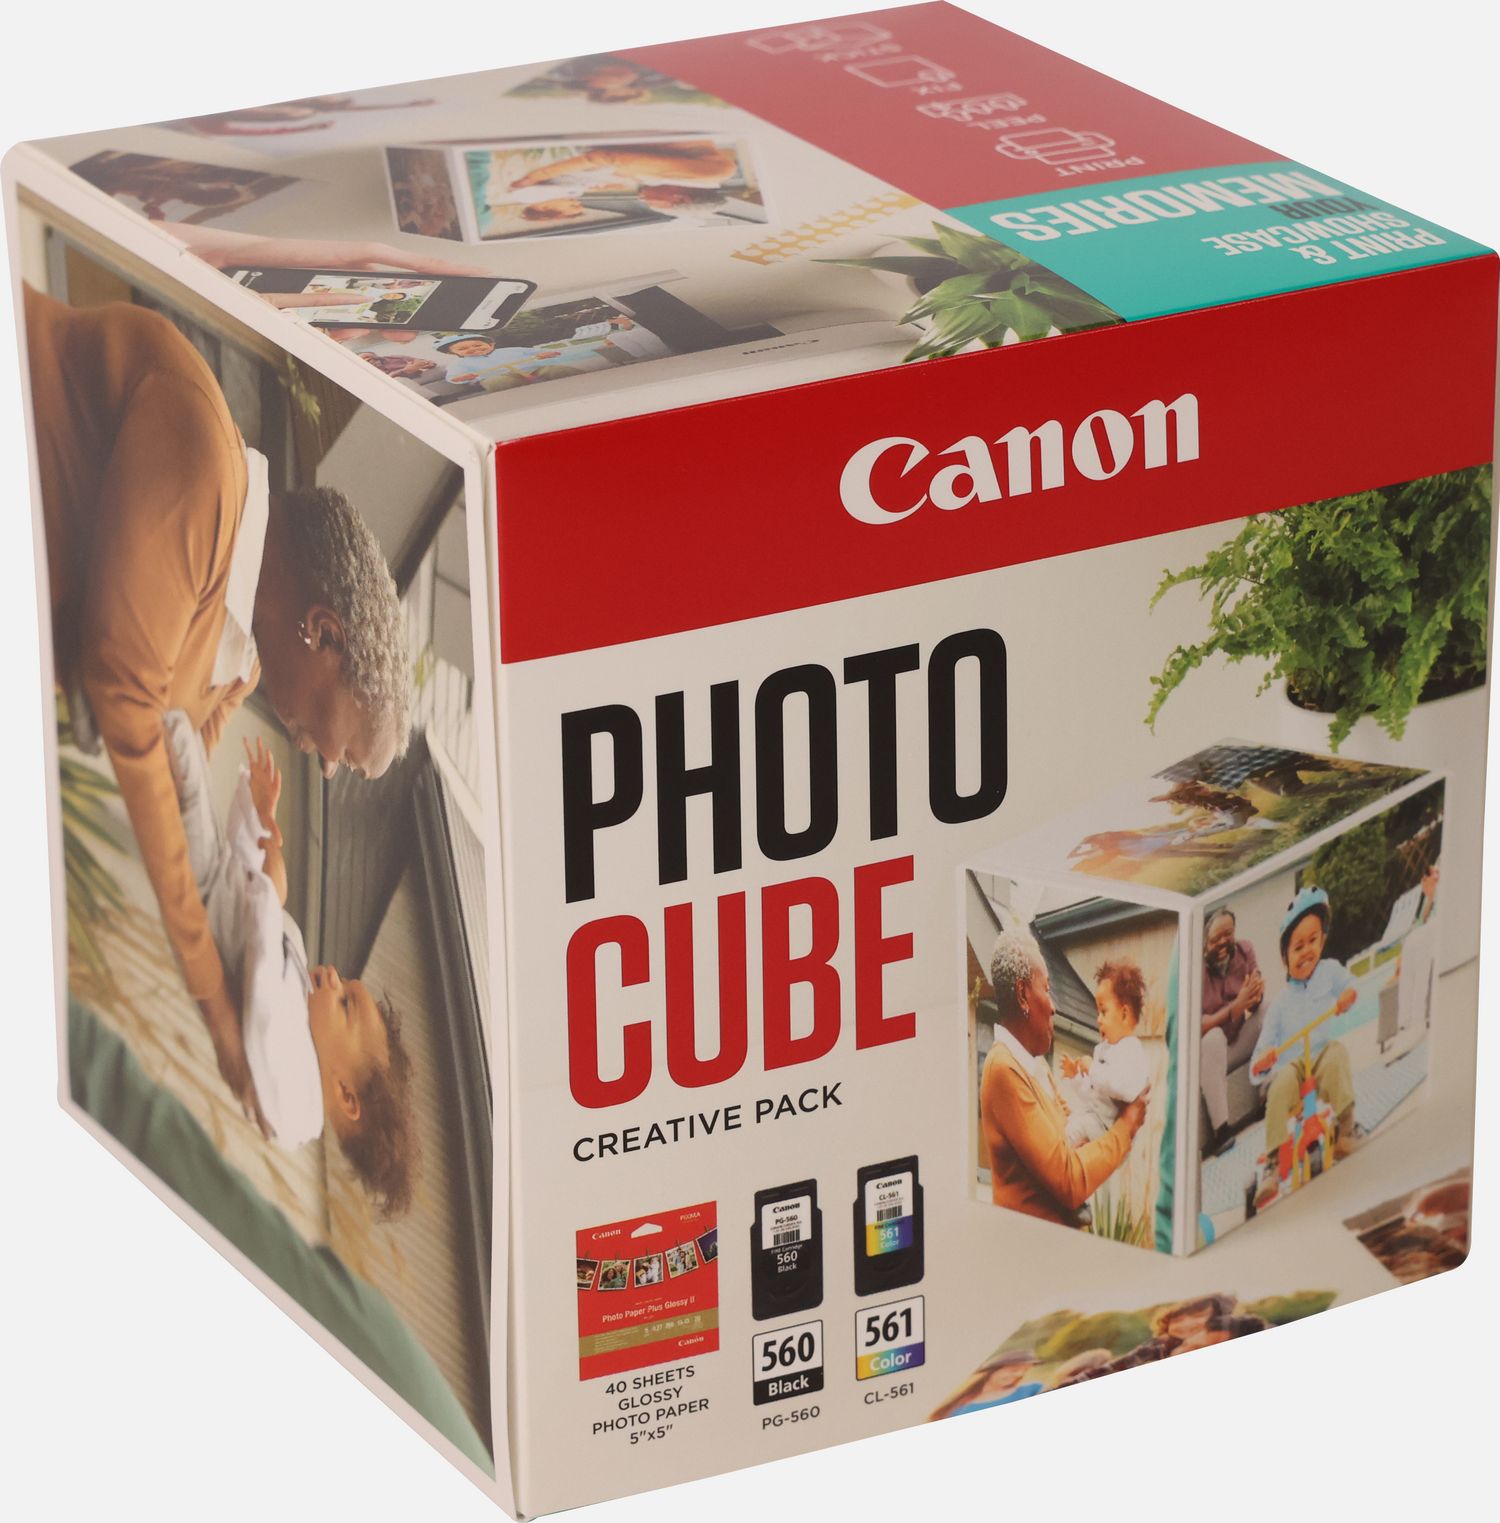 Image of Canon Photo Cube con cartucce Inkjet PG-560 + CL-561 e carta fotografica lucida Plus Glossy II PP-201 5x5" (40 fogli) - Confezione multipla, Blu